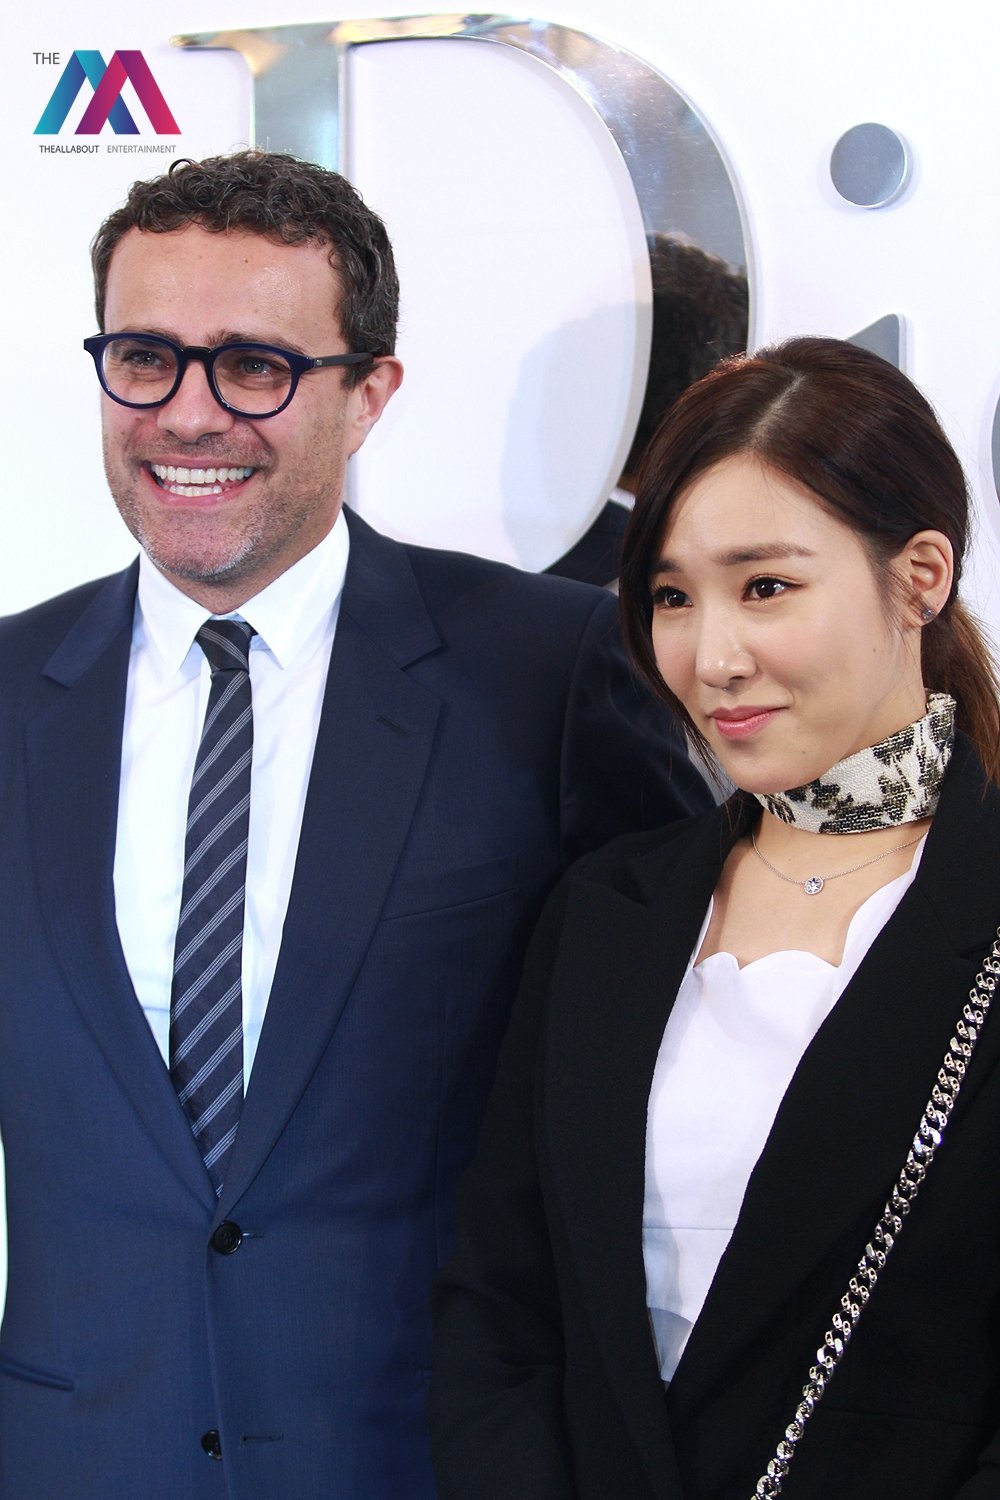 [PIC][17-02-2016]Tiffany khởi hành đi Thái Lan để tham dự sự kiện khai trương chi nhánh của thương hiệu "Christian Dior" vào hôm nay - Page 8 H0RH9Wkktl-3000x3000